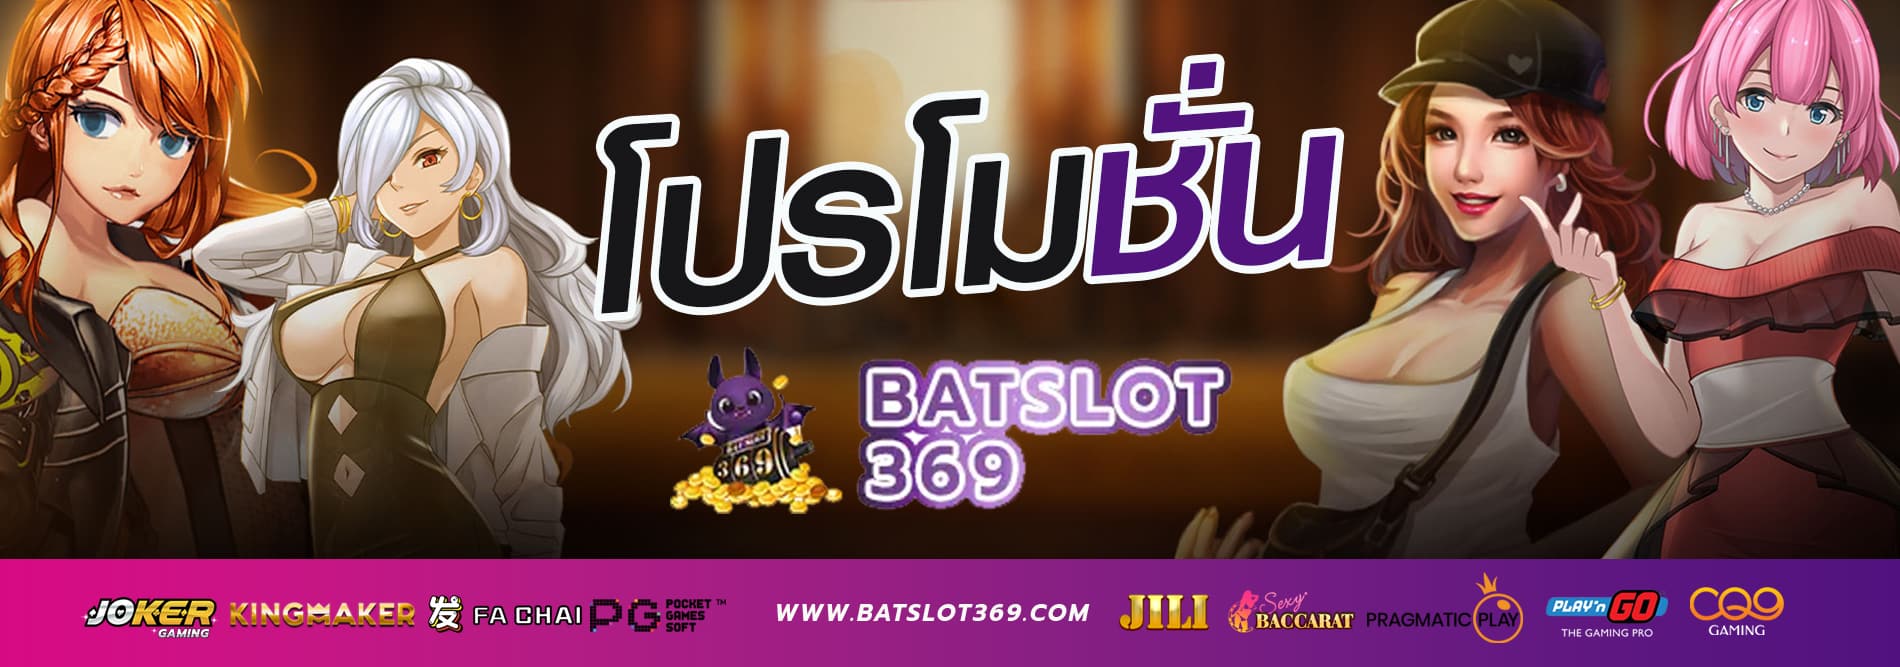 batslot369-promotione banner